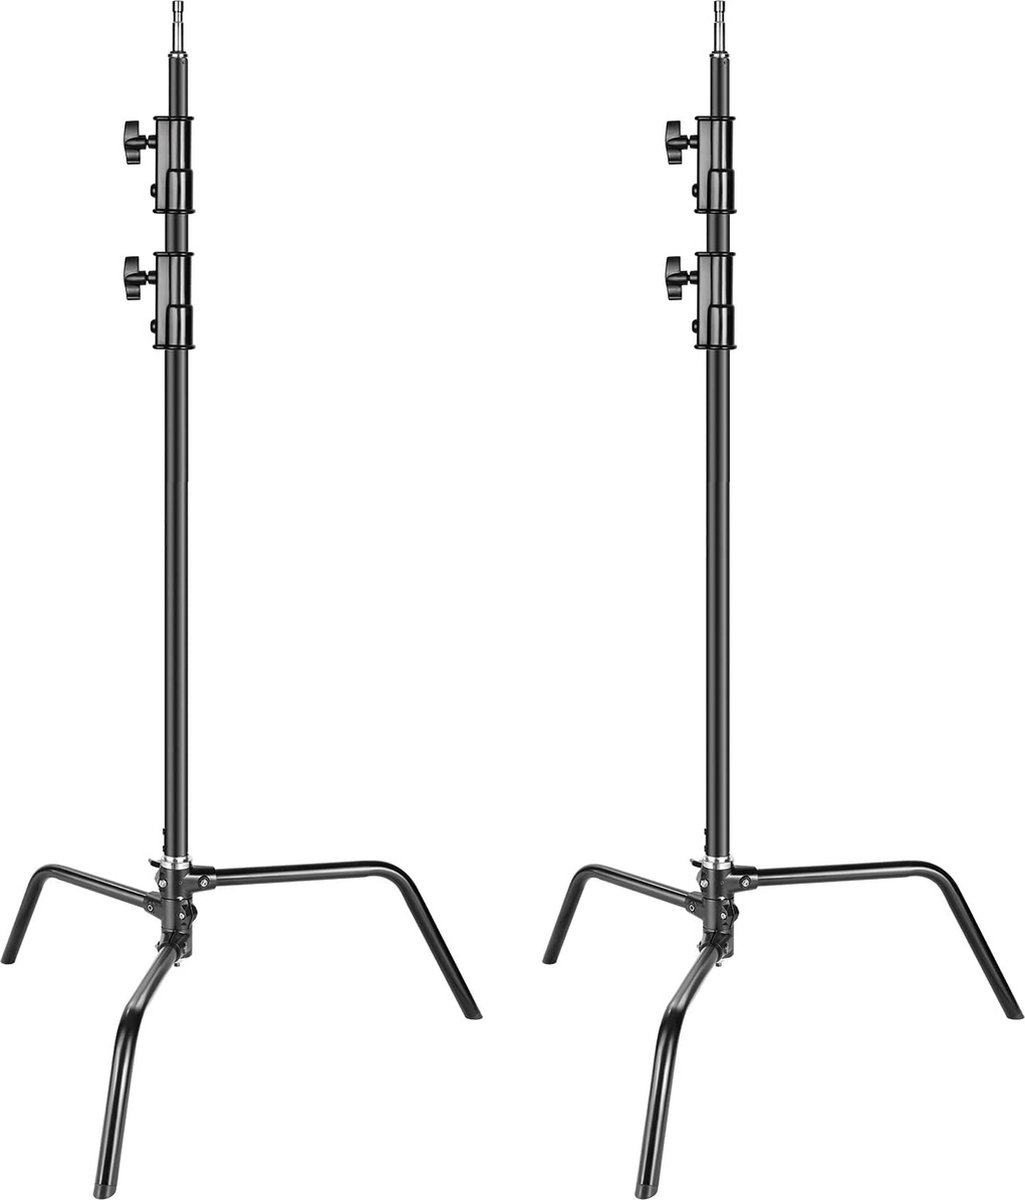 Neewer® - 2 Pack hoogwaardig Aluminium C Statief - Verstelbaar 5-10 voet / 1,6-3,2 m licht Statief voor Fotografiereflectoren - Softboxen Monolights - Schermen (zwart)